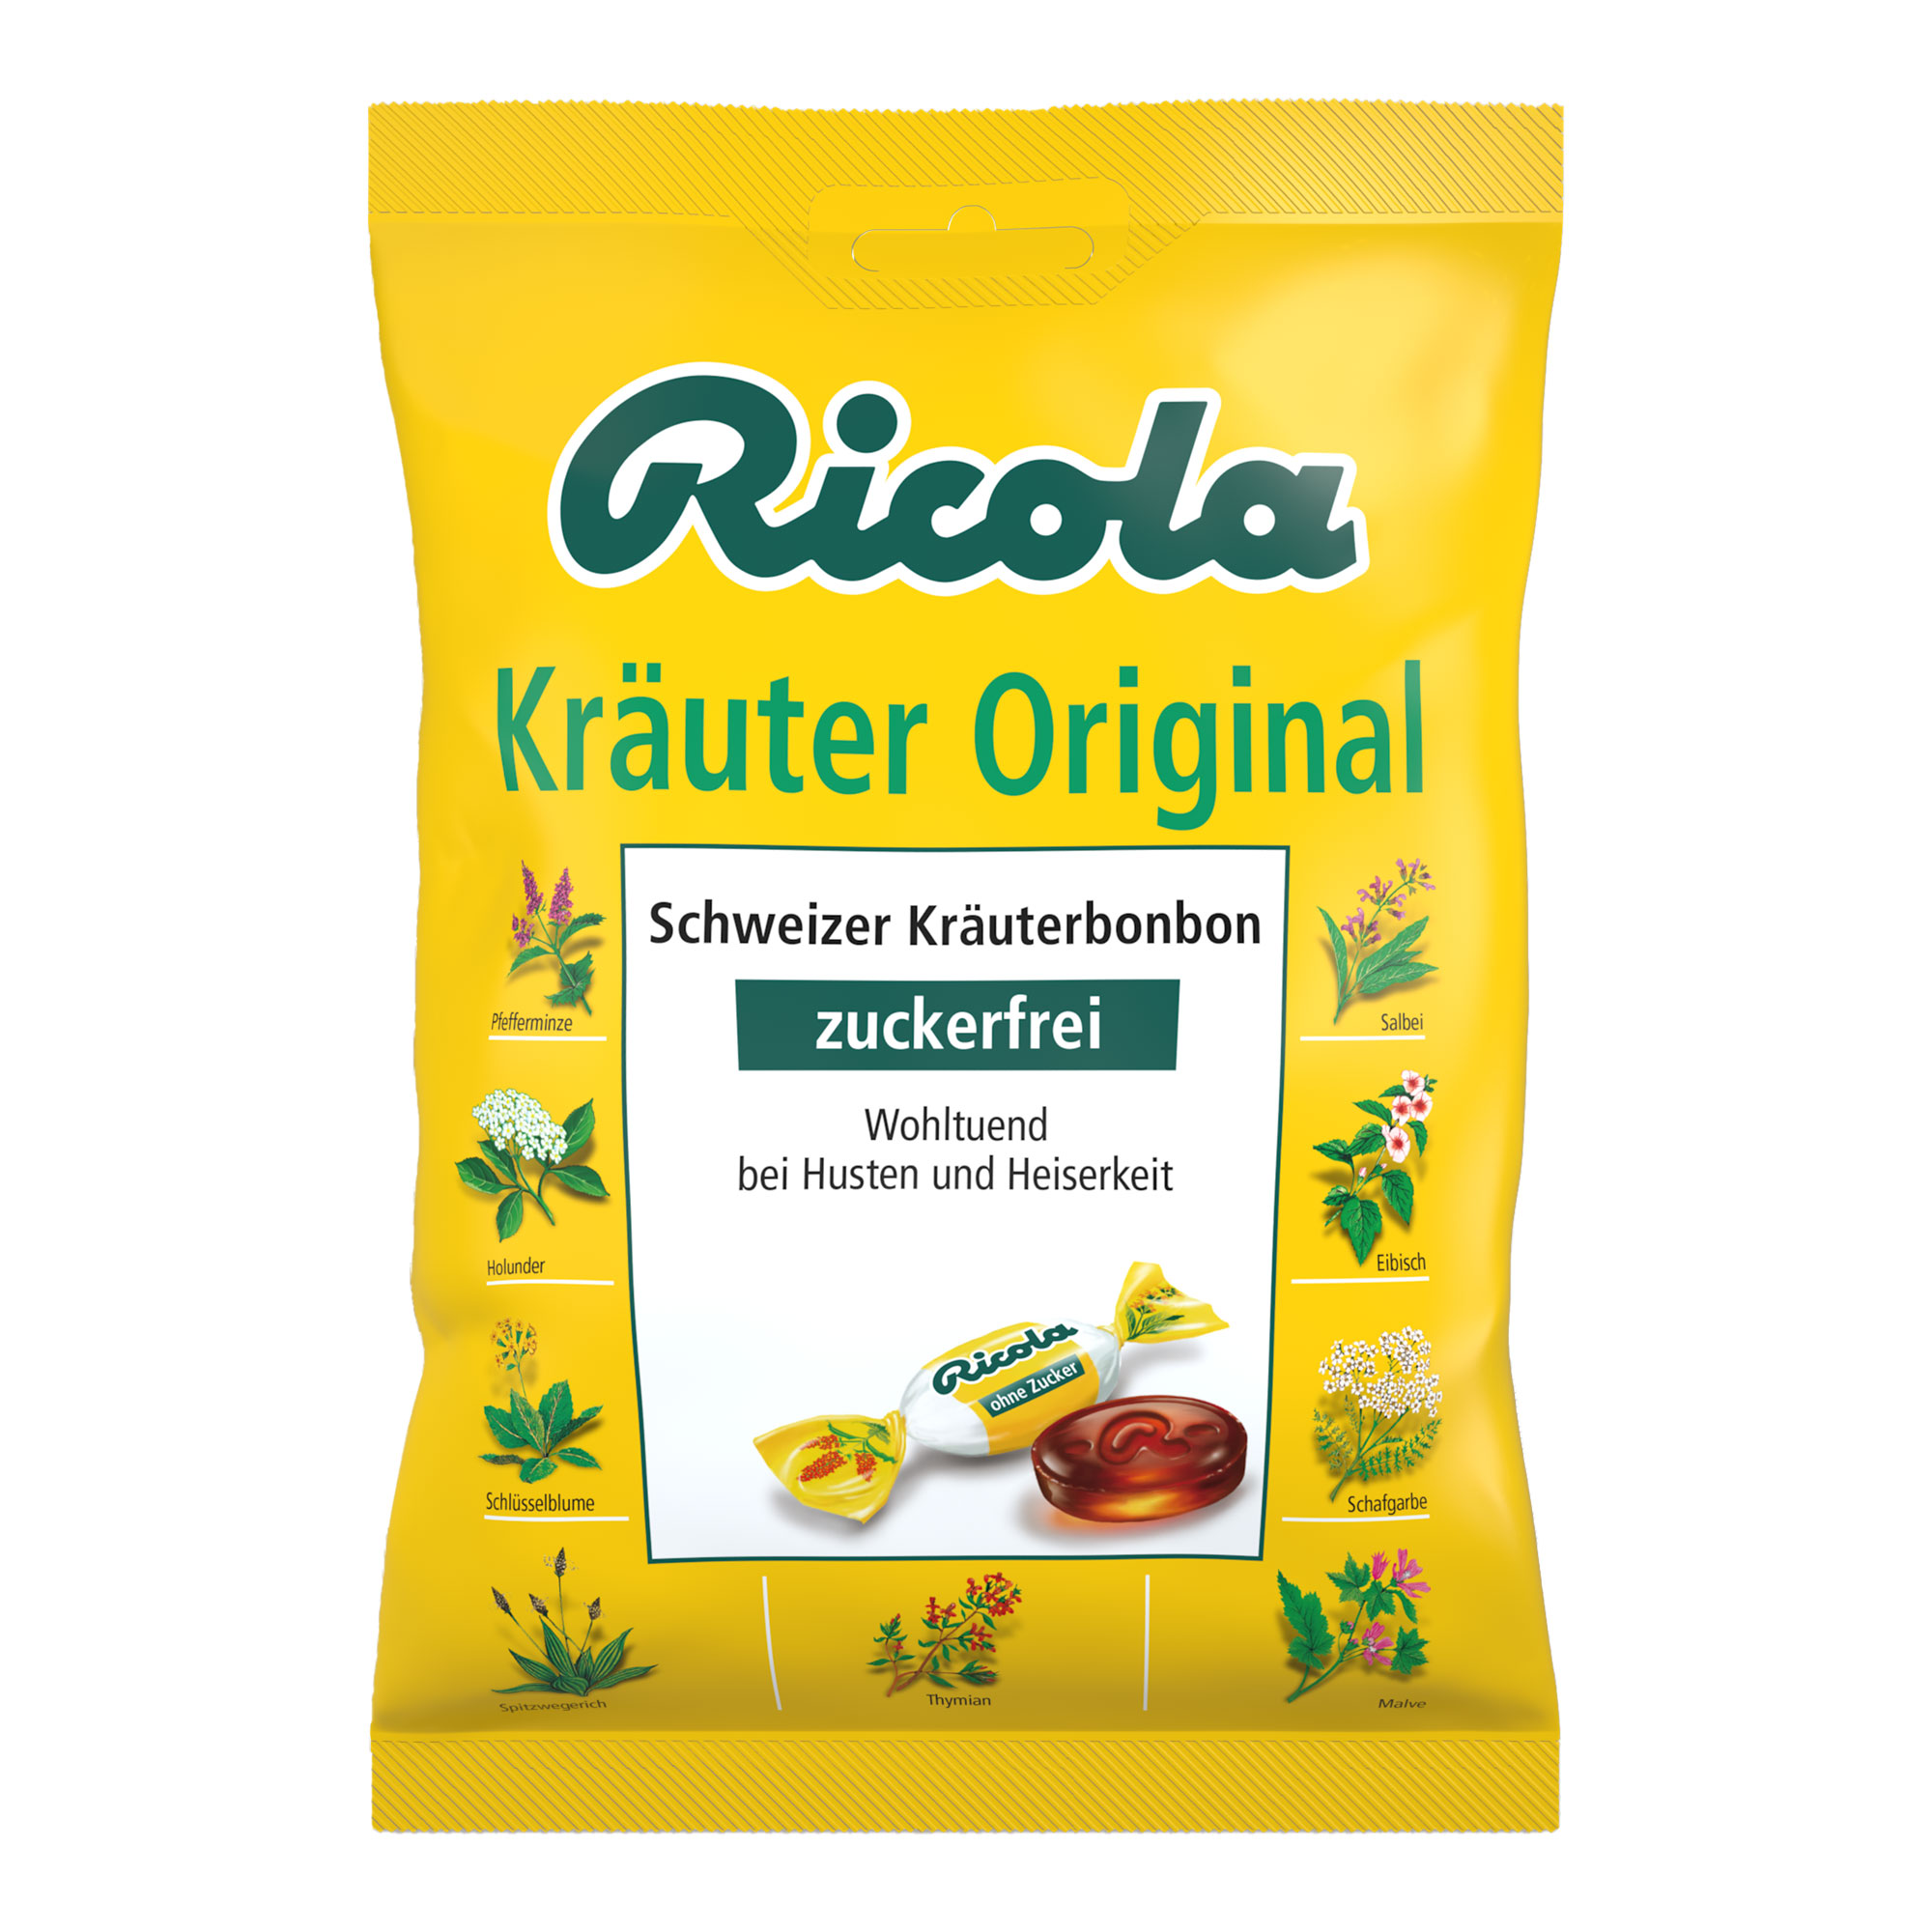 Schweizer Kräuterbonbons mit Menthol und Kräutern. Zuckerfrei.